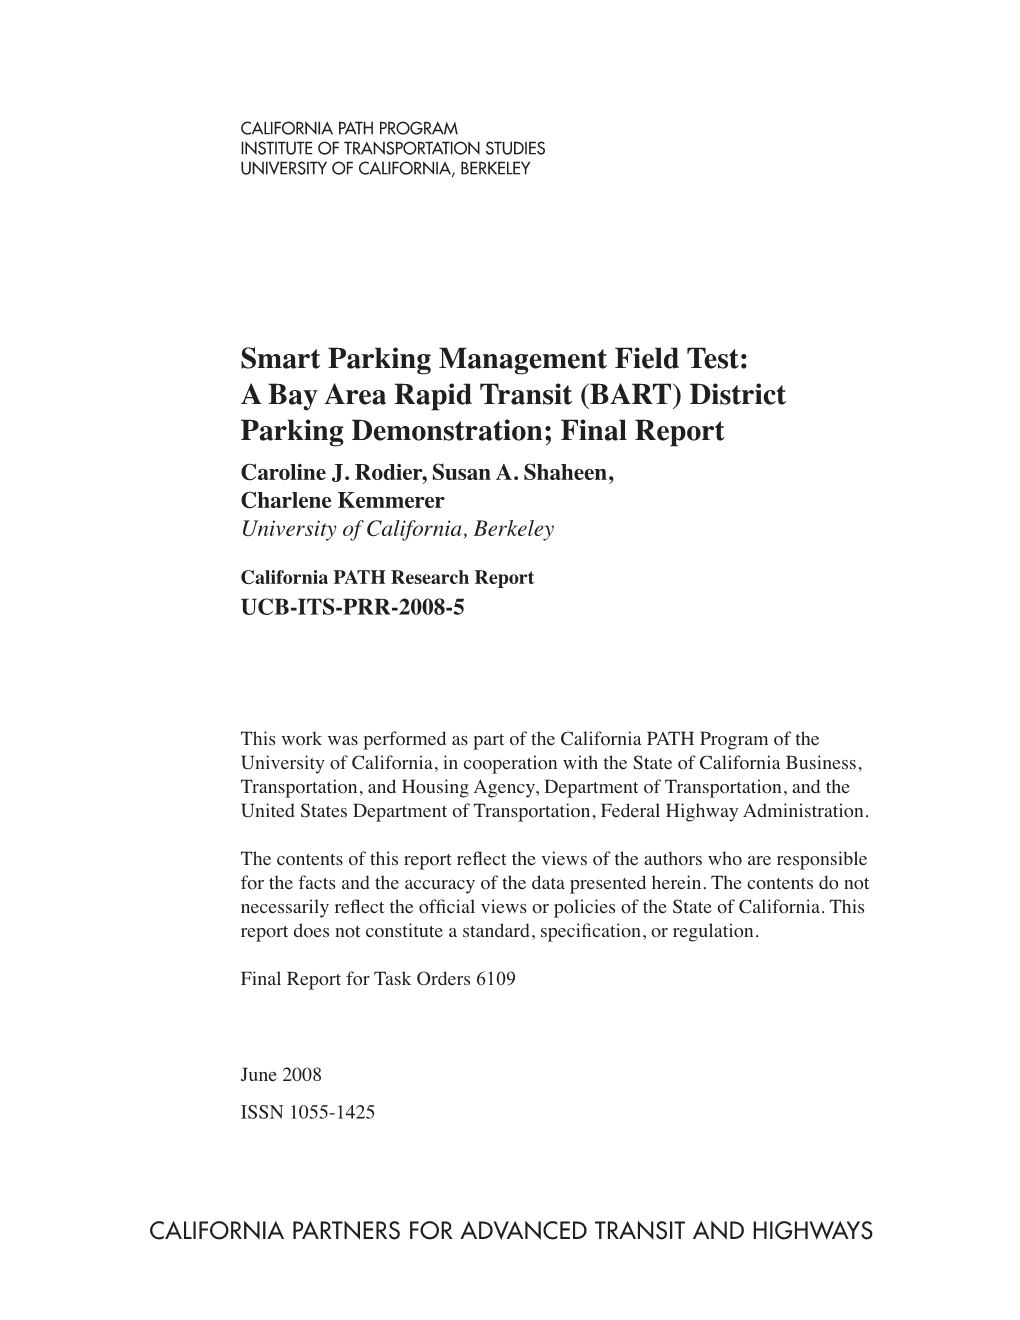 Smart Parking Management Field Test: a Bay Area Rapid Transit (BART) District Parking Demonstration; Final Report Caroline J